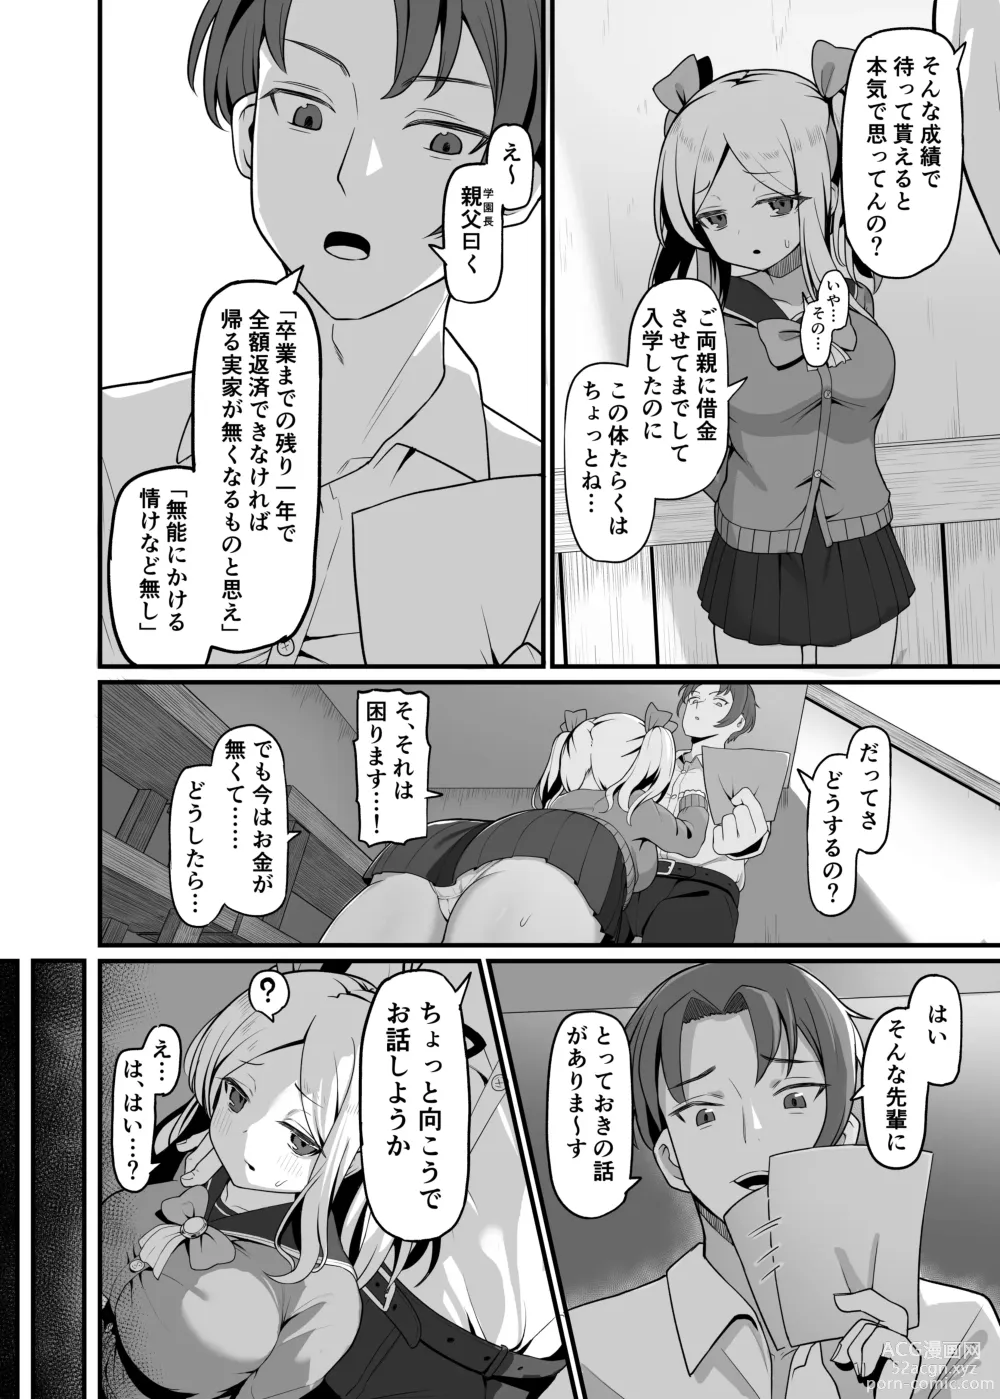 Page 3 of doujinshi Chicchakute Dekai Senpai.